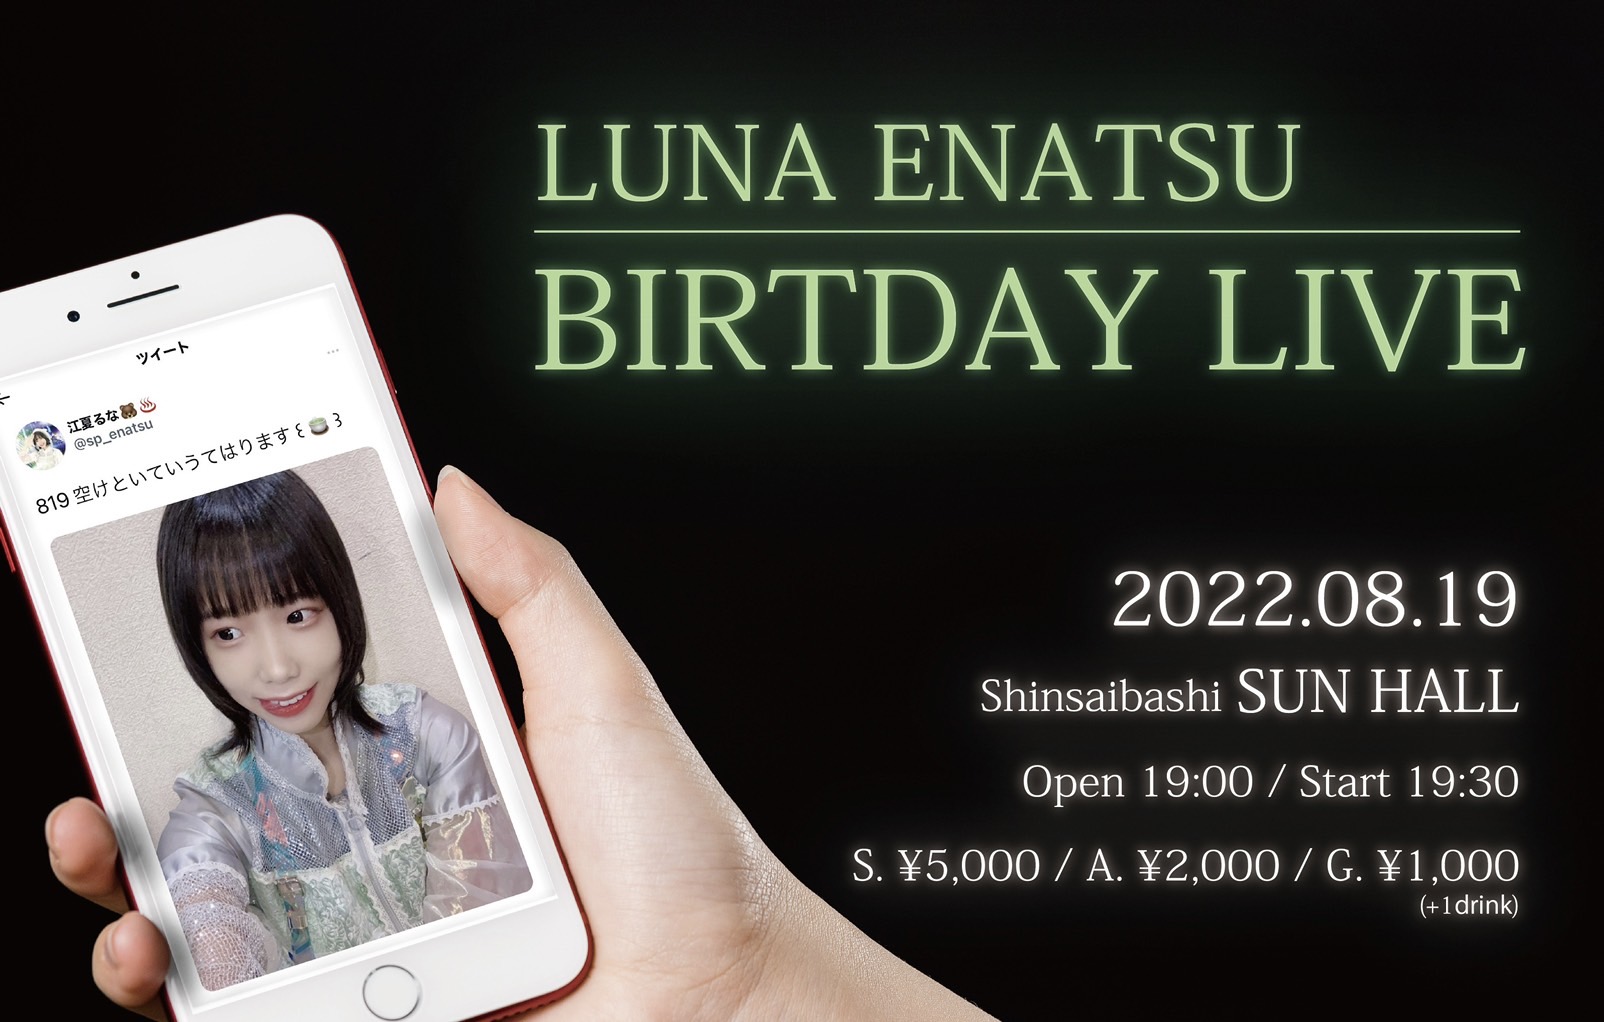 LUNA ENATSU BIRTDAY LIVE